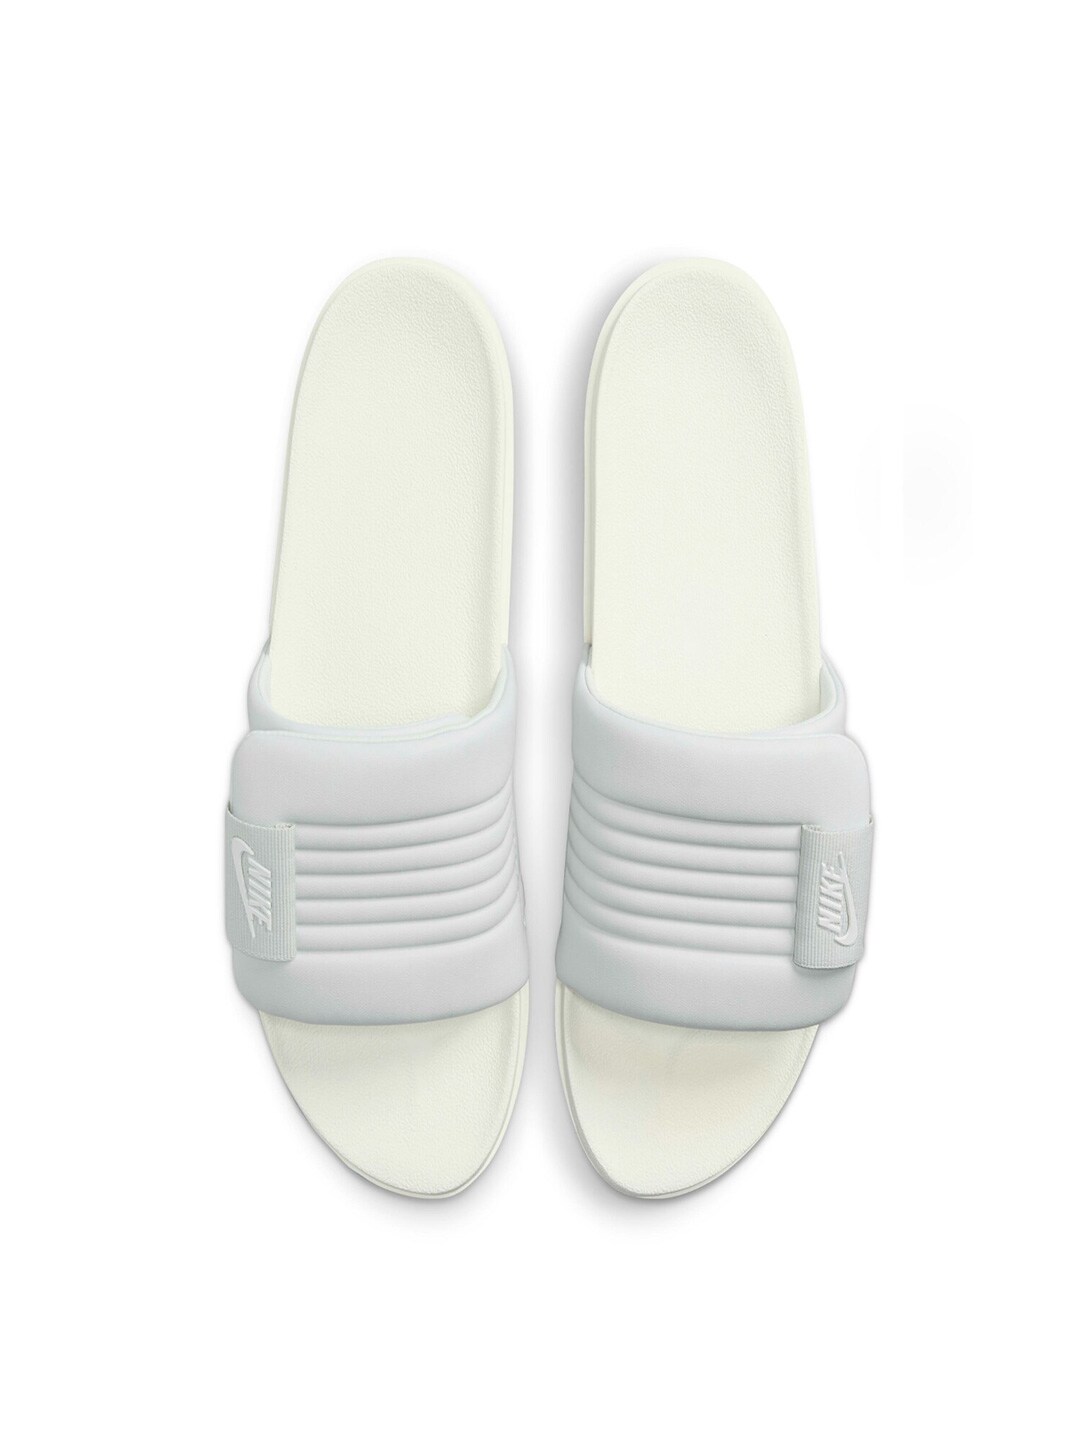 Nike flip-flops, Men's Fashion, Footwear, Slippers & Slides on Carousell-sgquangbinhtourist.com.vn